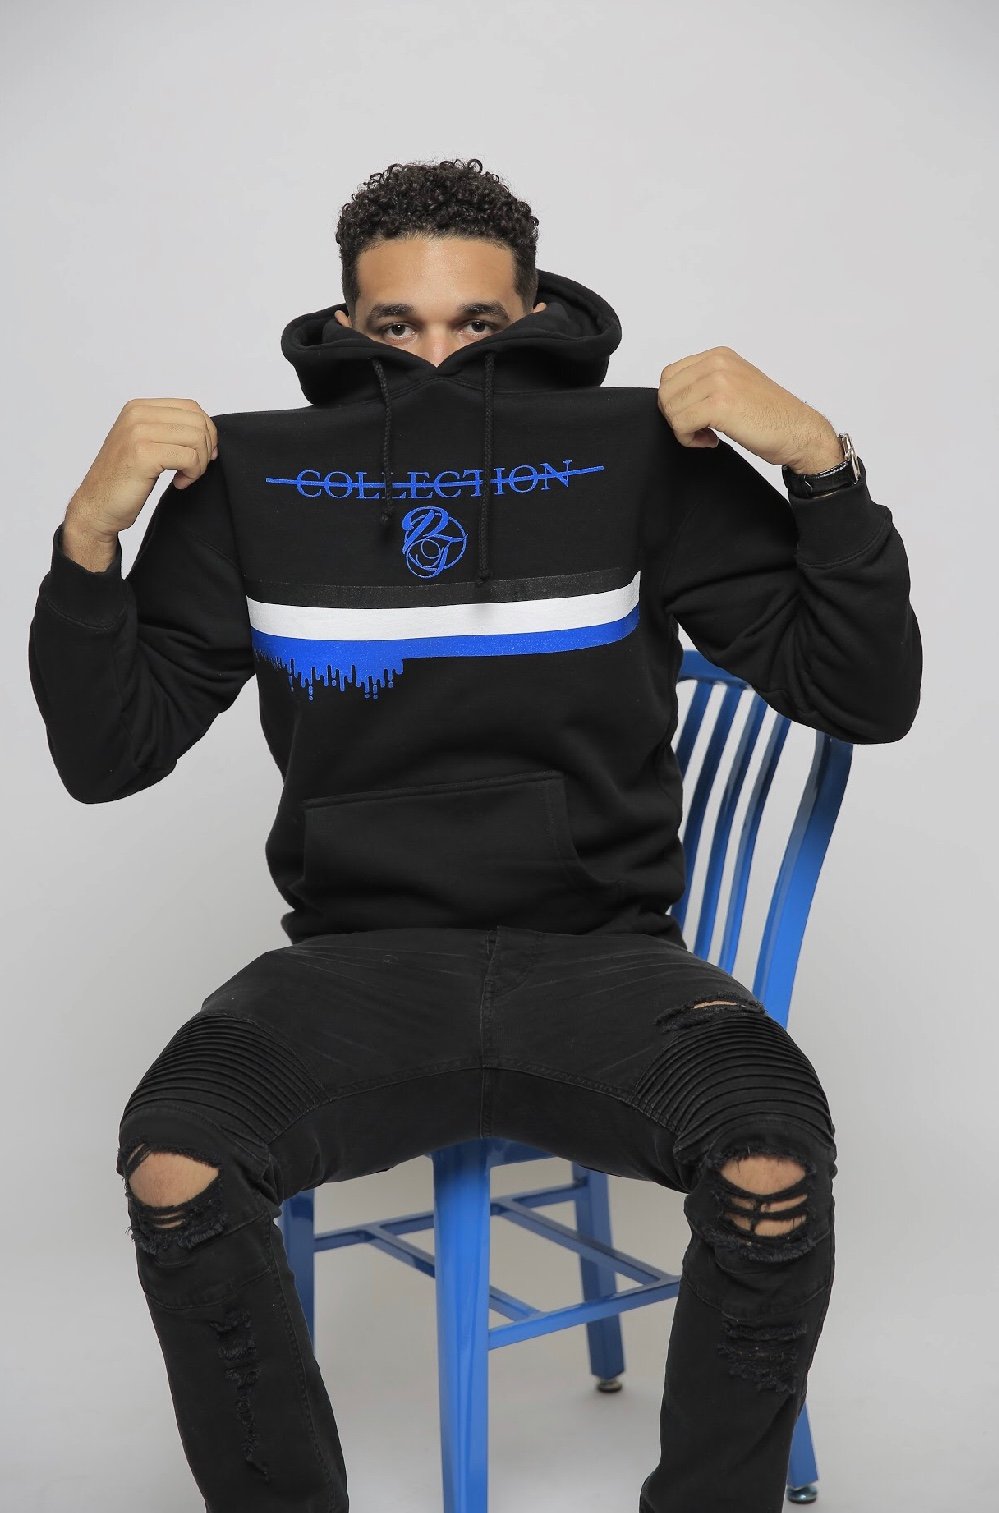 black and blue hoodie